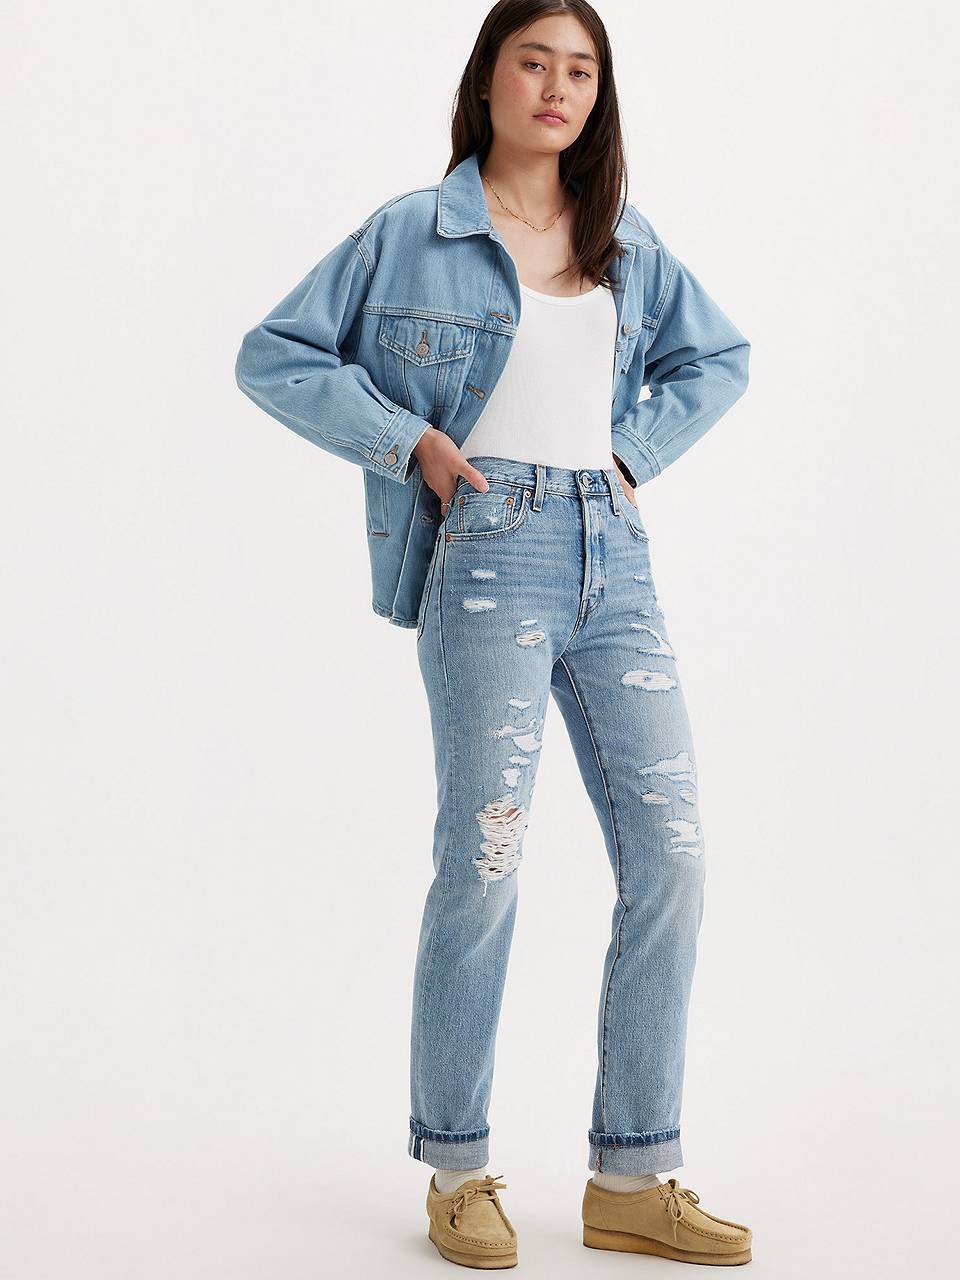 Women's Jeans: Shop Best Jeans for Women| Levi's® US